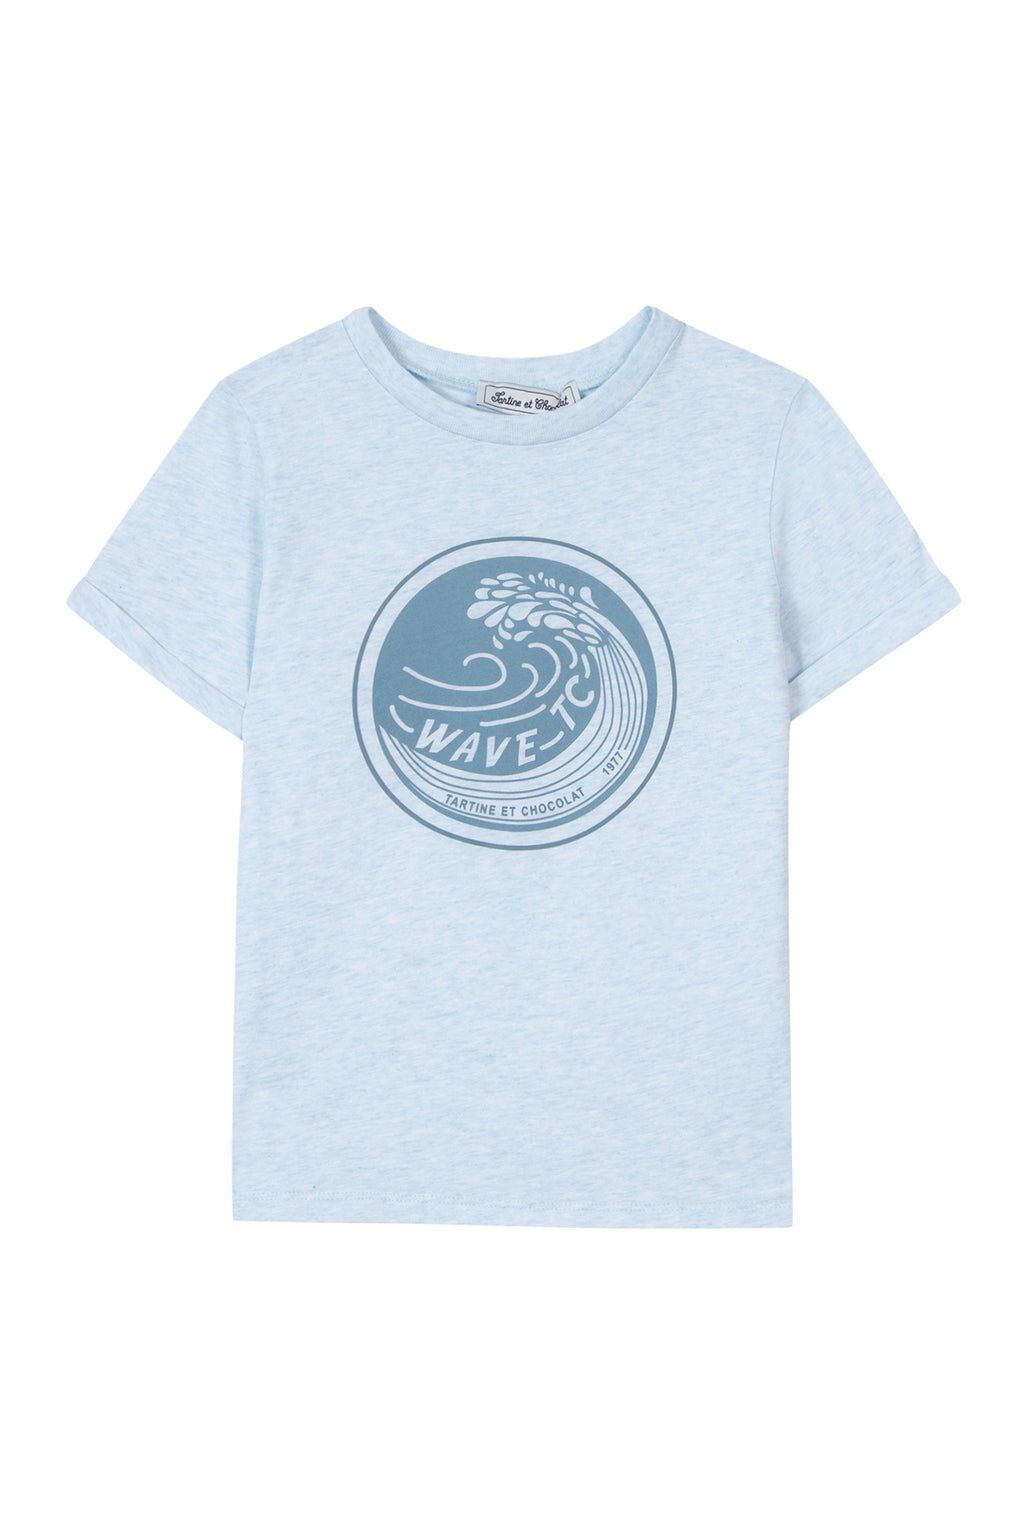 T-shirt - Jersey Sky blue